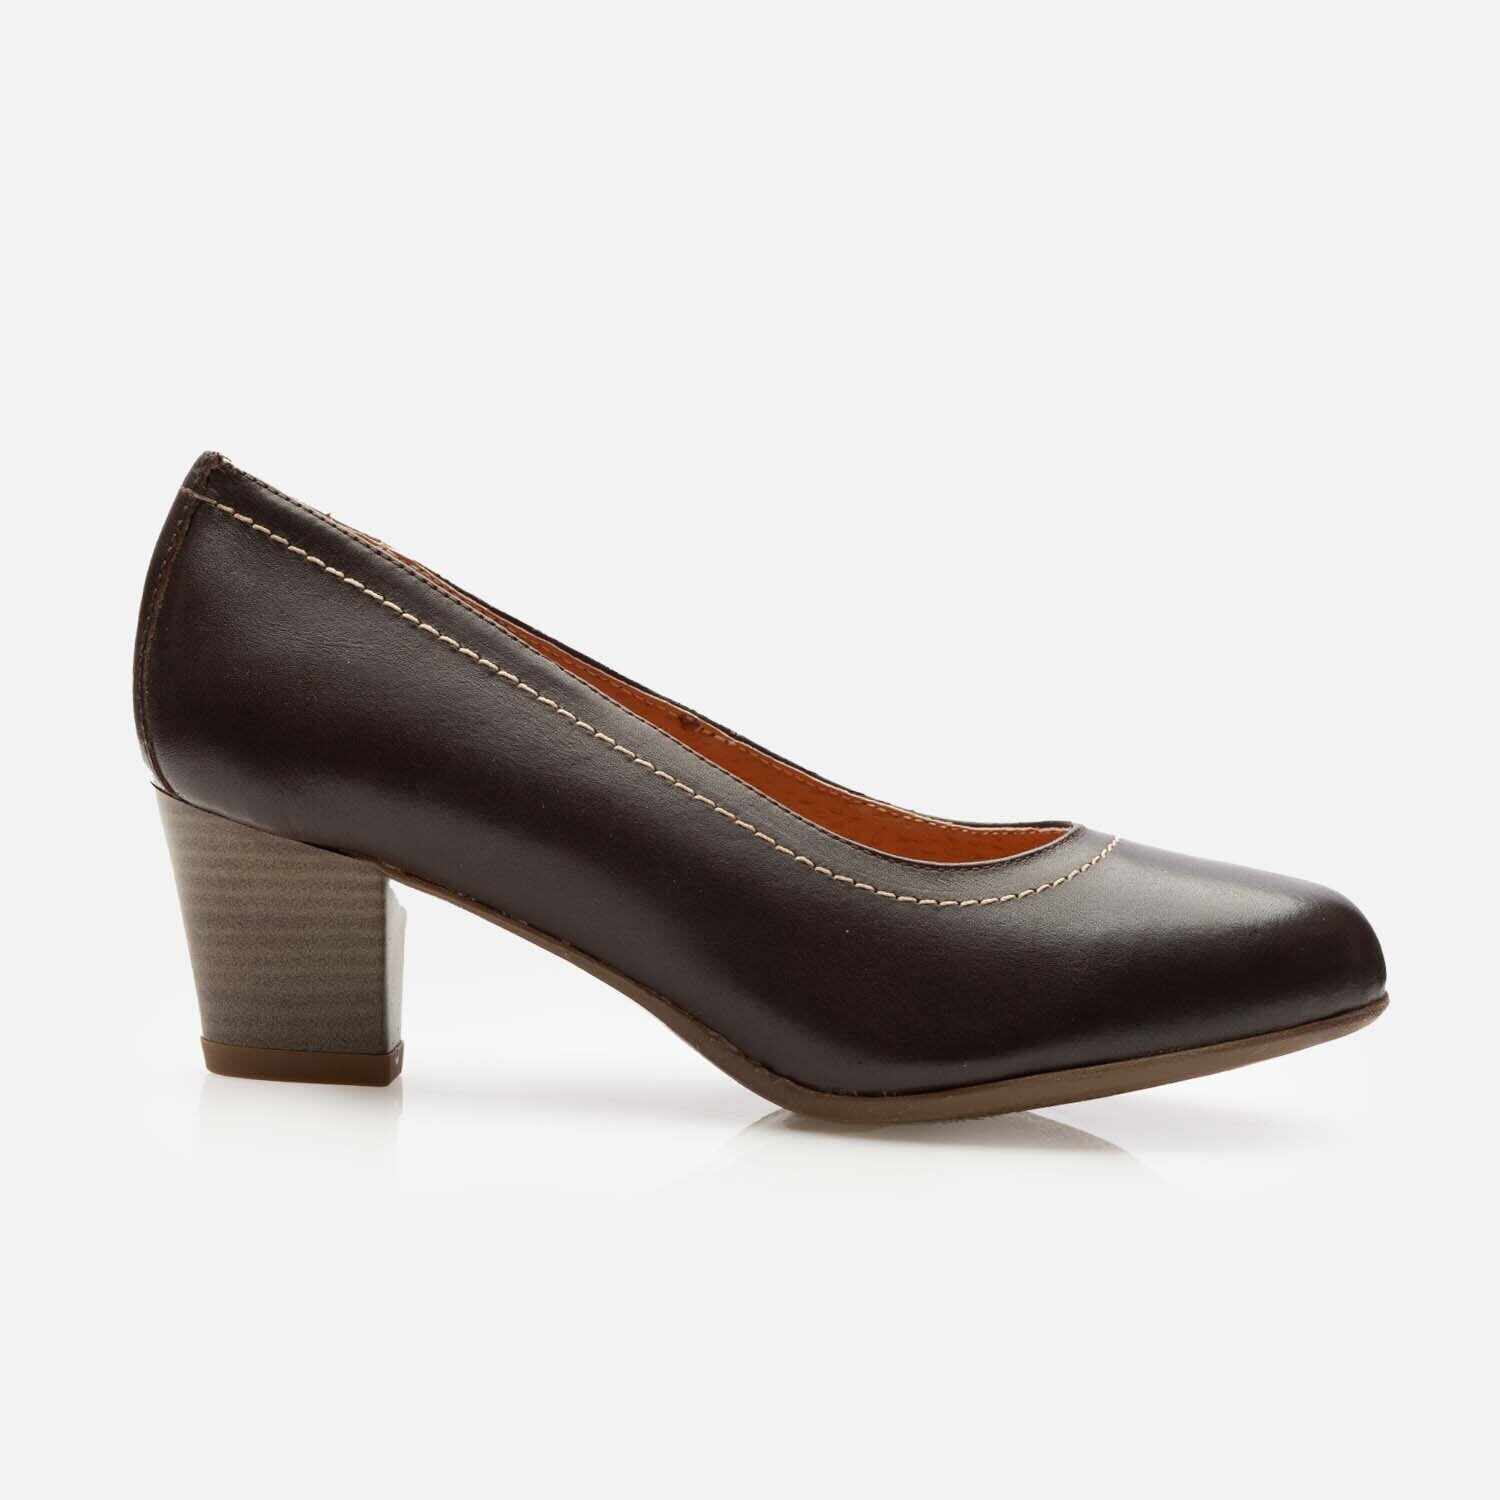 Pantofi casual cu toc dama din piele naturala - 022 maro inchis box